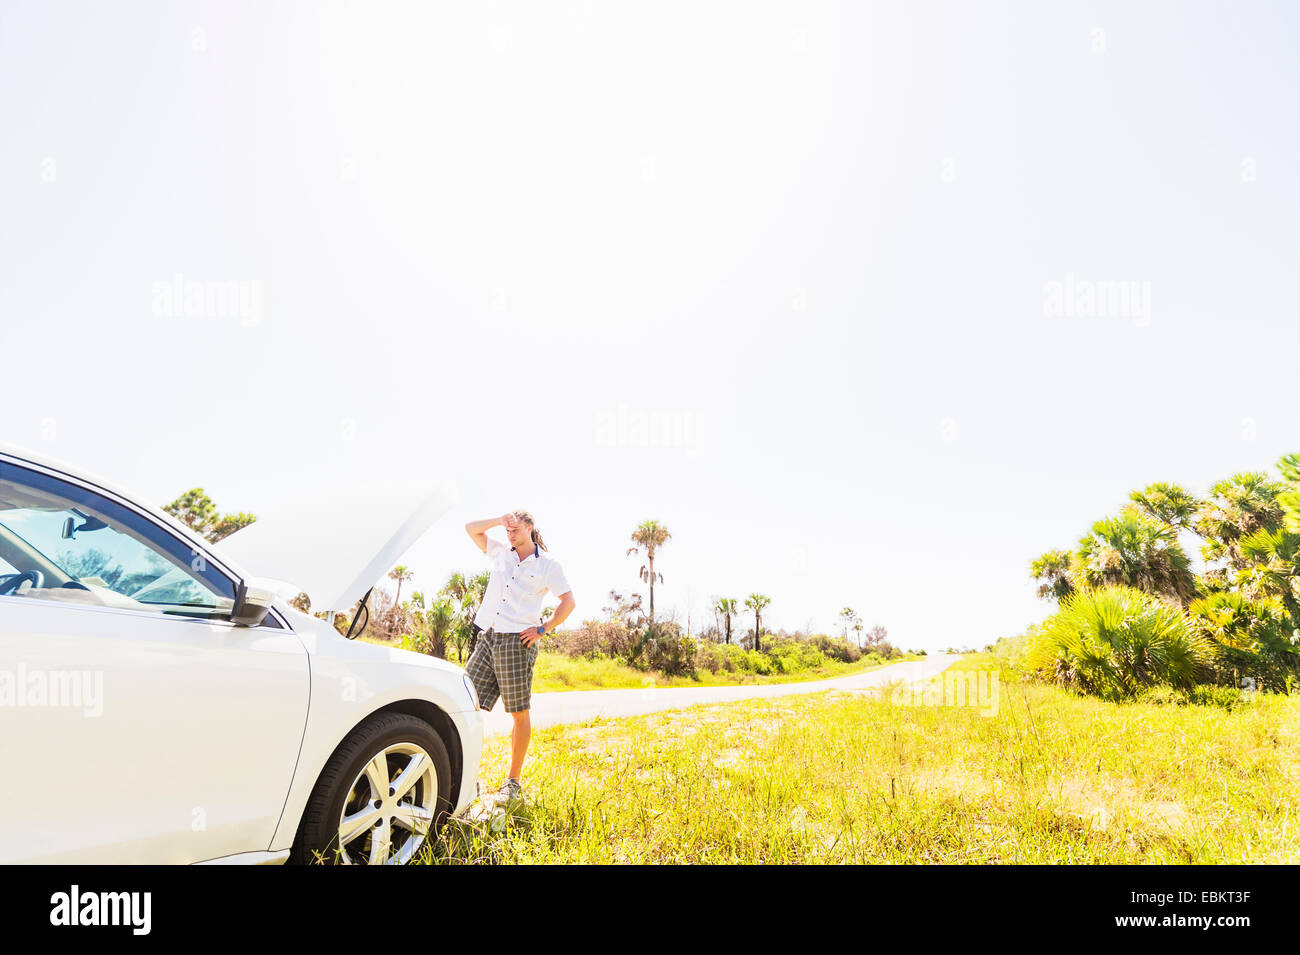 USA, Floride, Tequesta, jeune homme à la recherche de moteur de voiture Banque D'Images